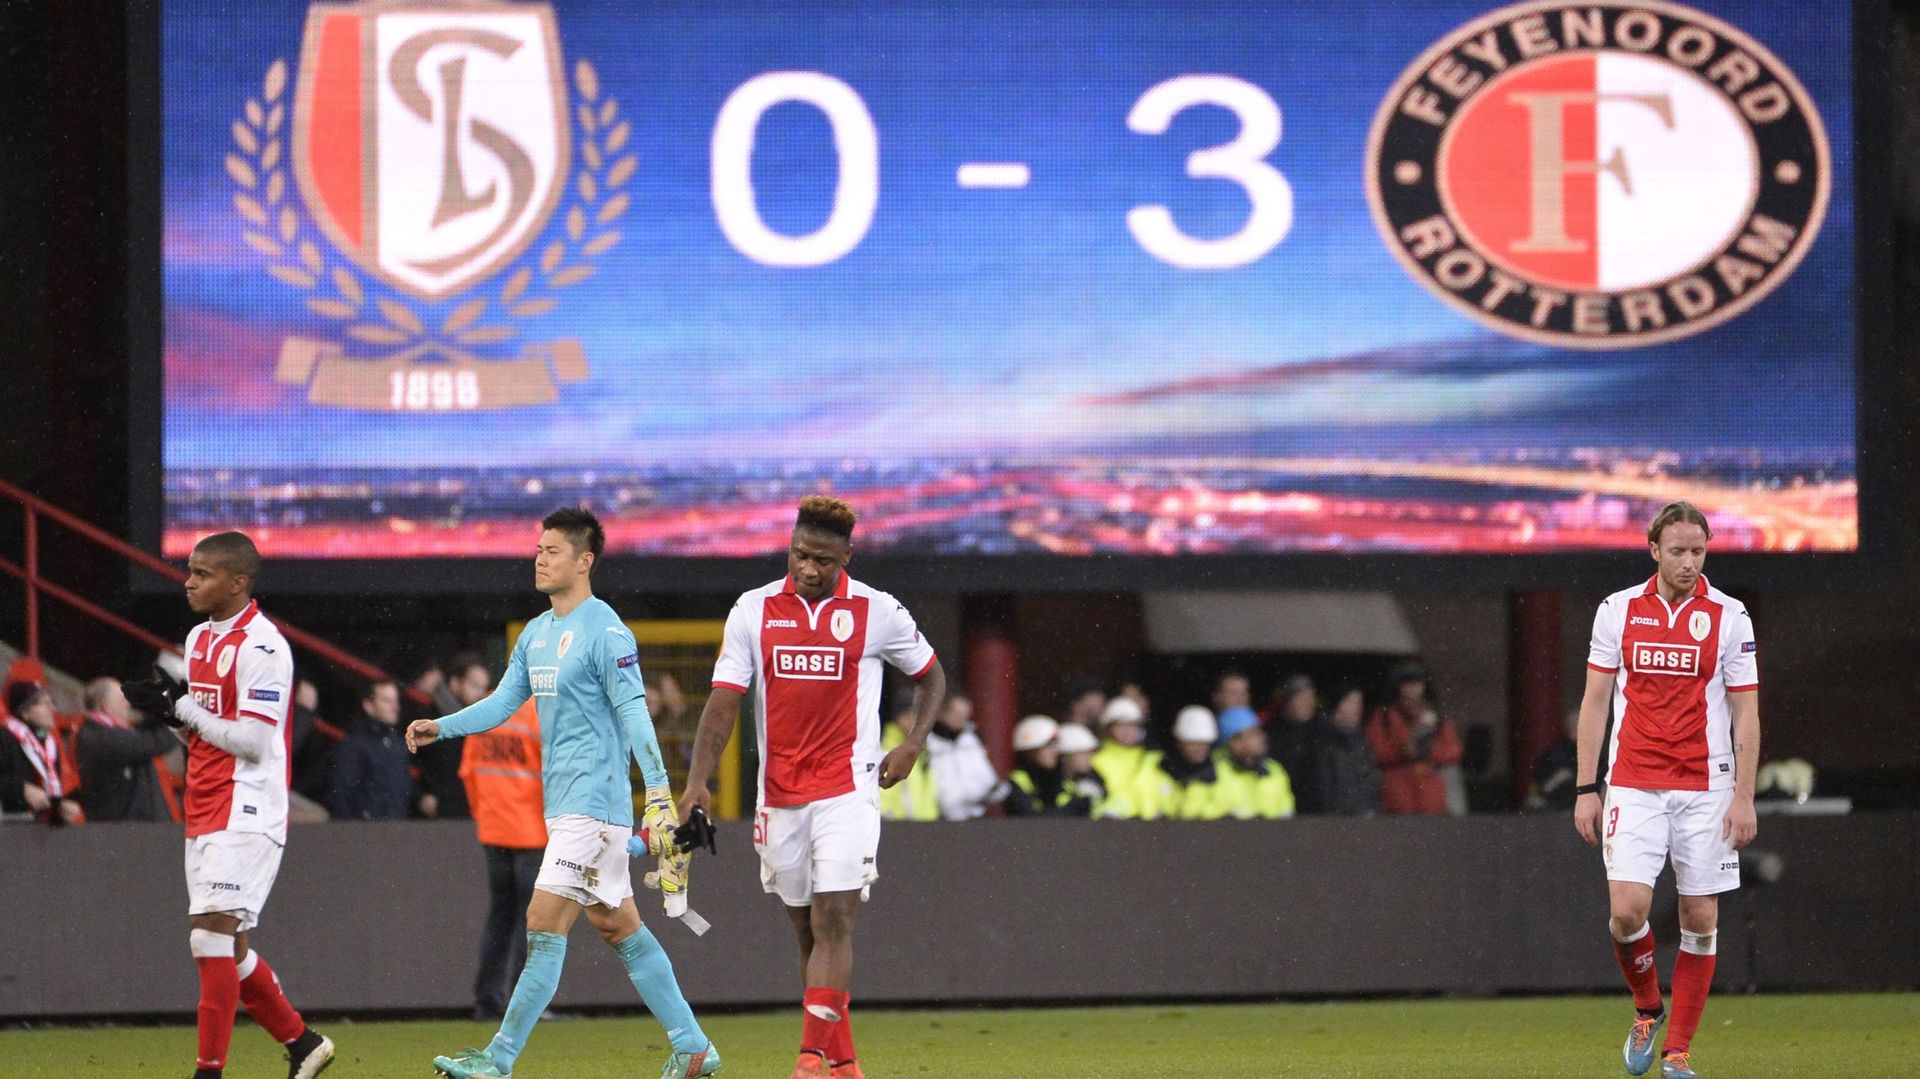 Huit hooligans condamnés après les débordements du match Standard-Feyenoord